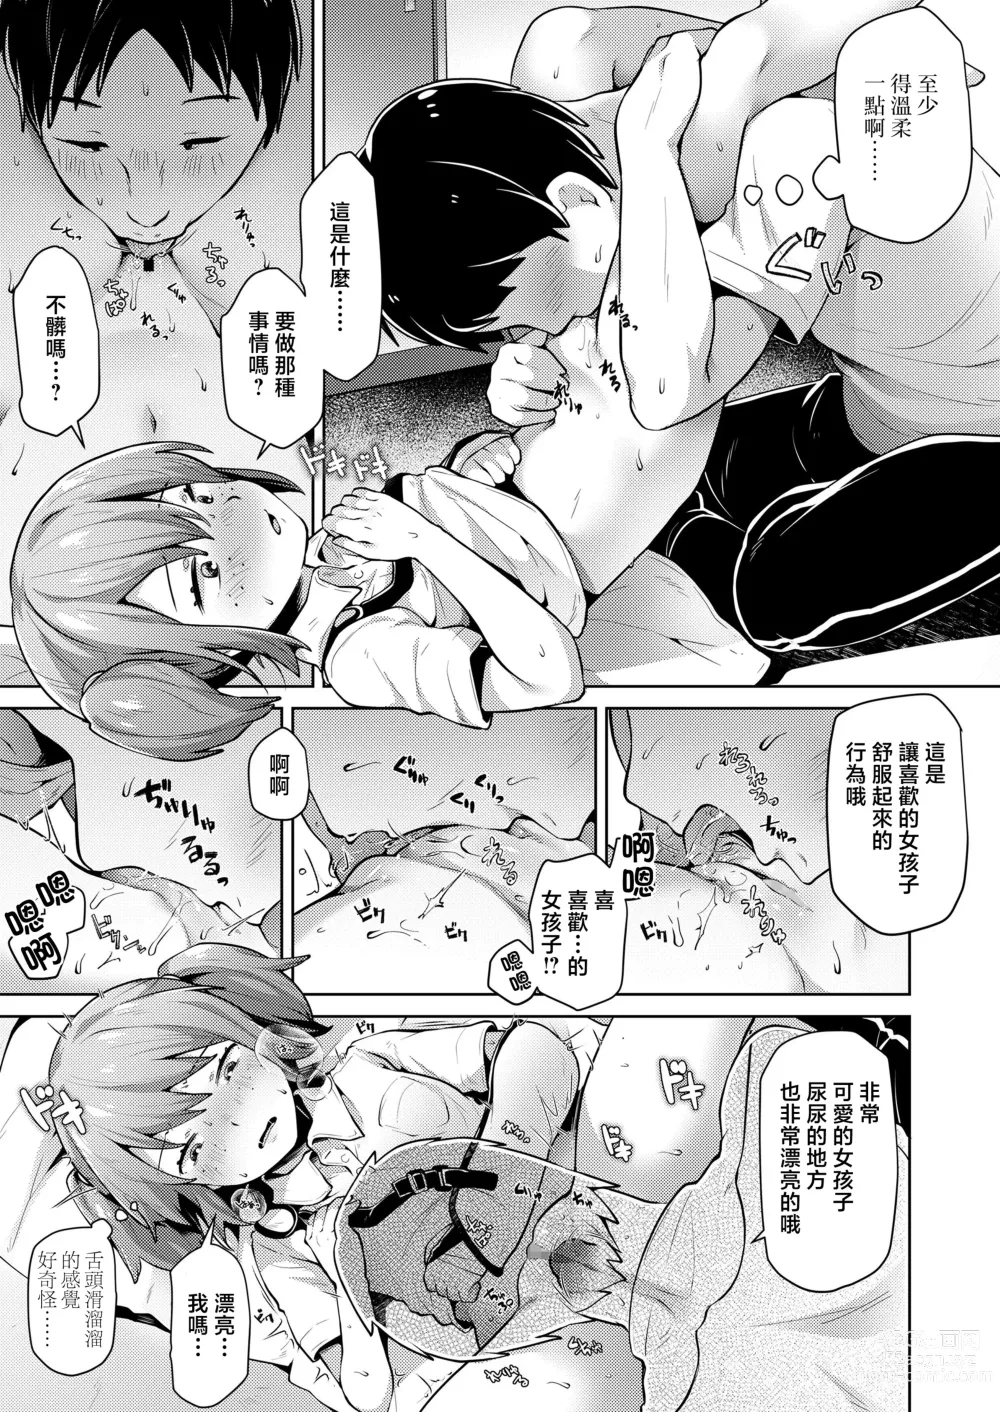 Page 7 of manga Homete Nobasou!